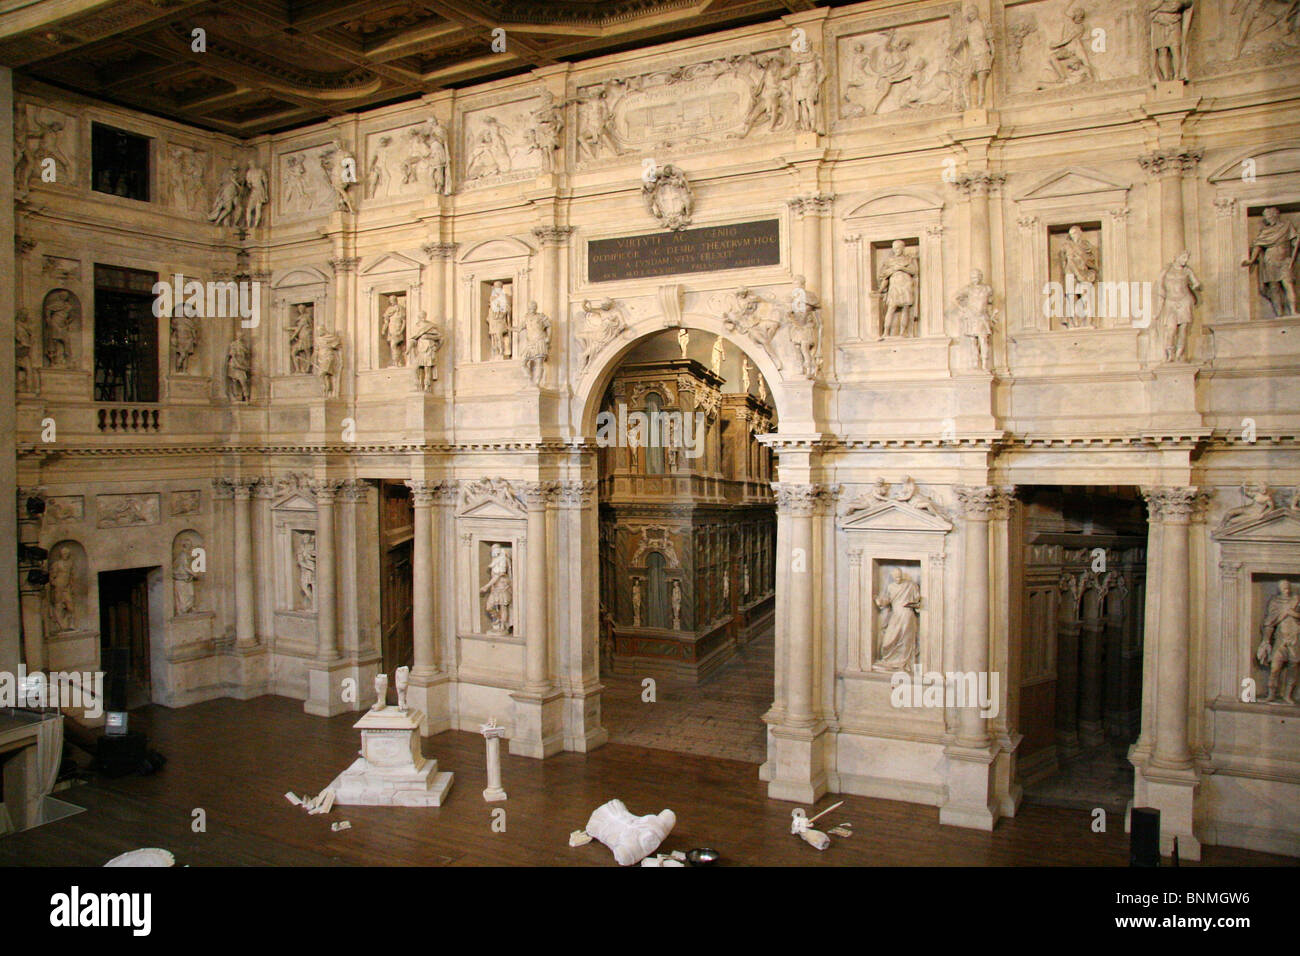 Italien Vicenza Teatro Olimpico Palladio im inneren Fähigkeiten Kunstmuseum Stockfoto